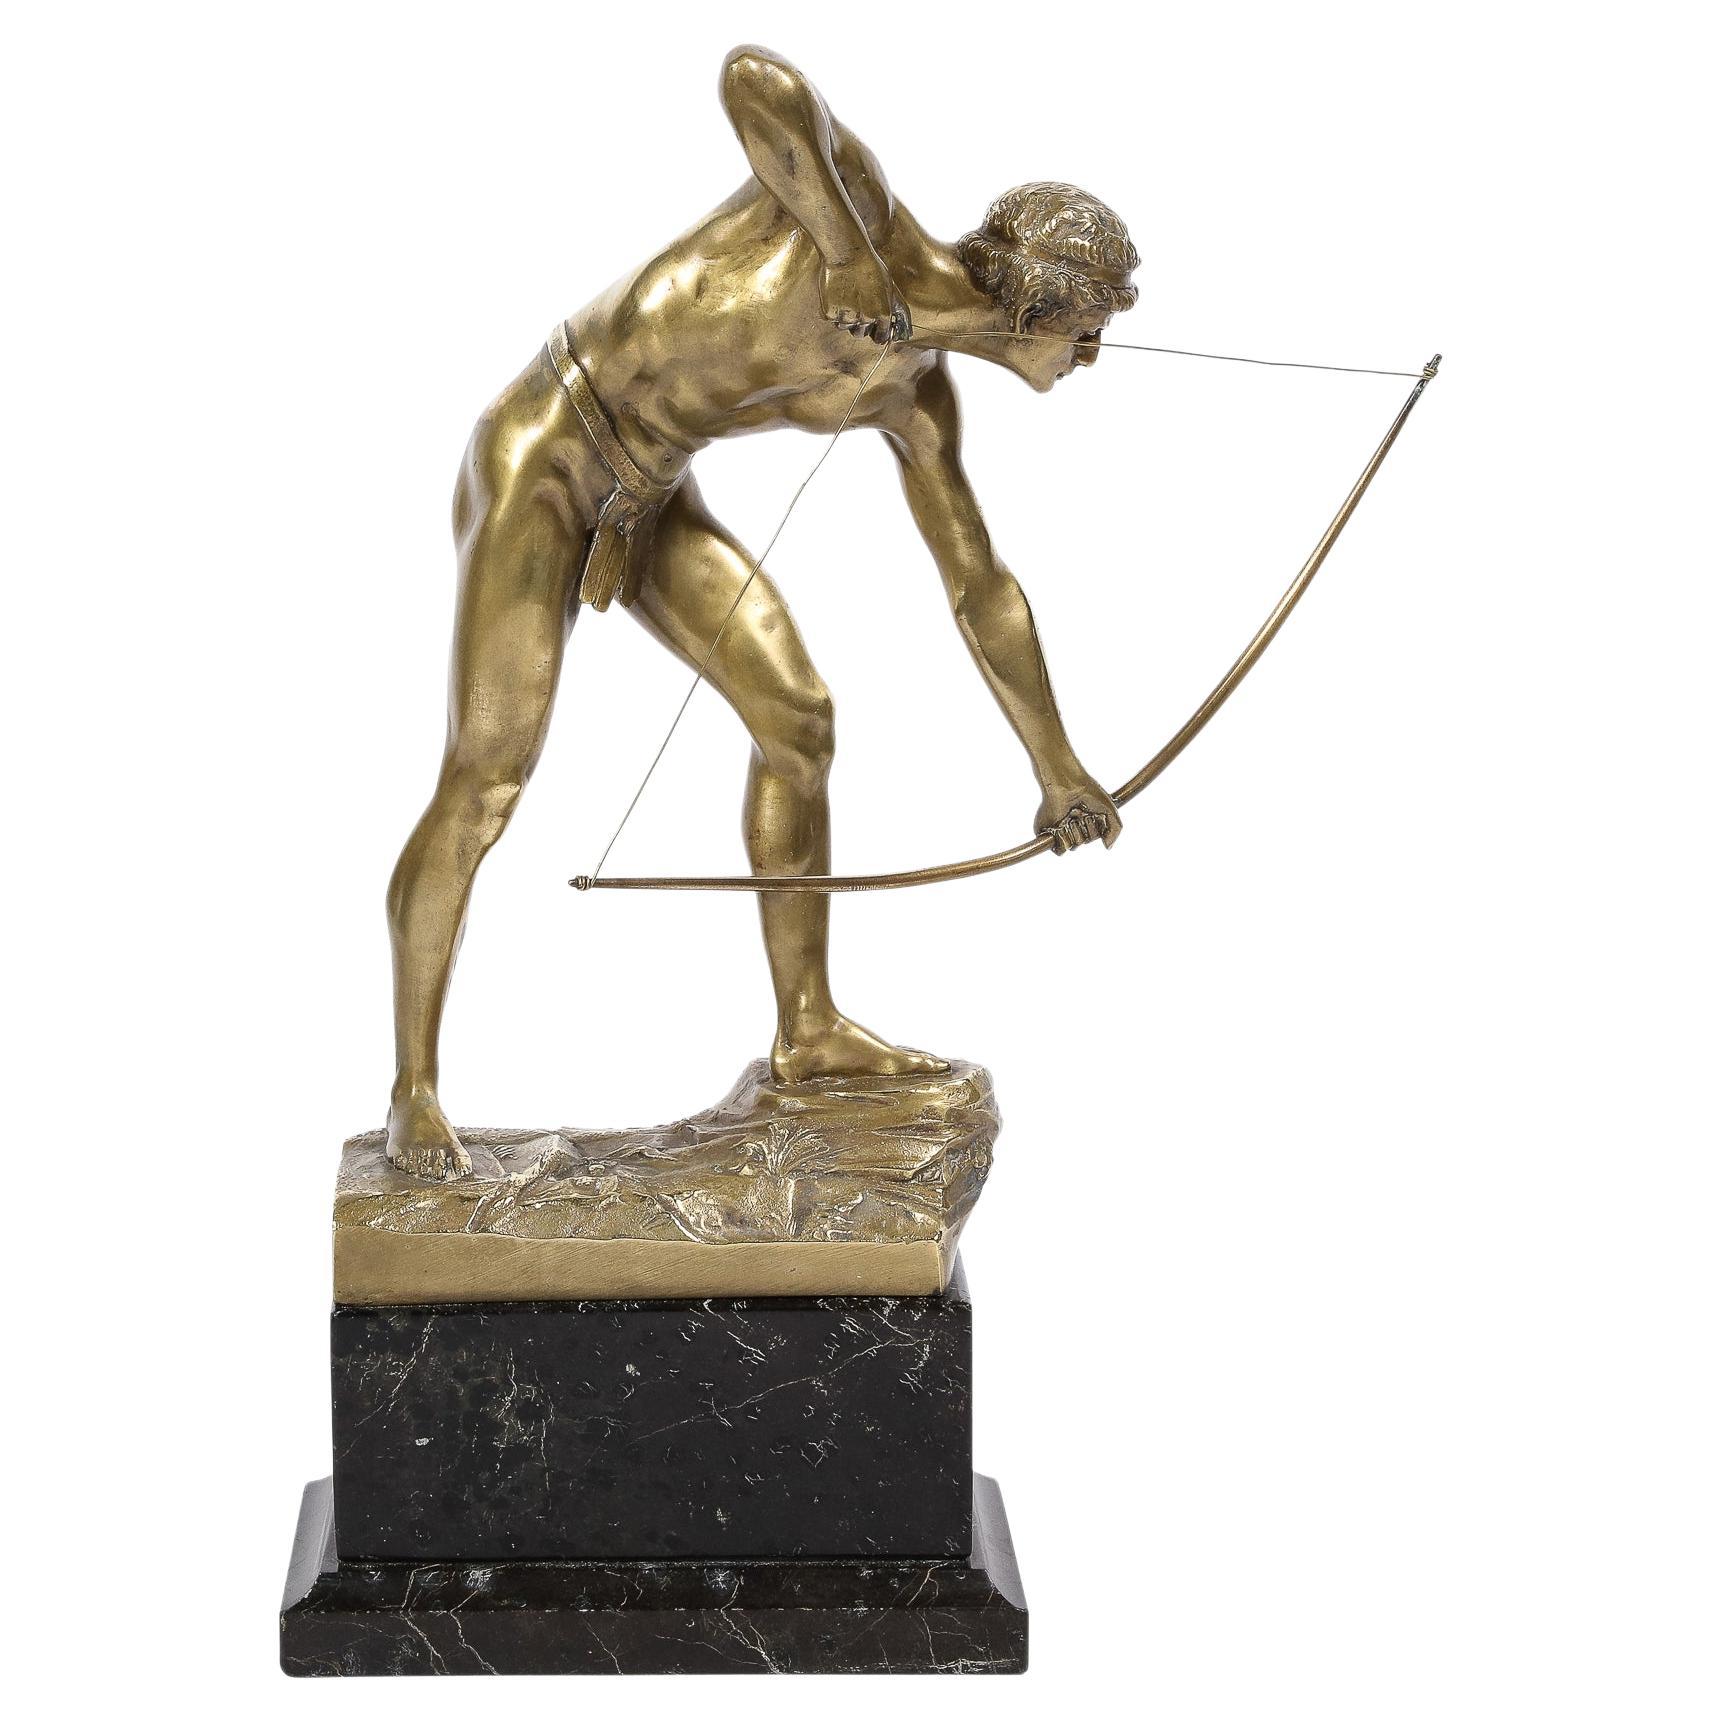 Art Deco Gilt Bronze Archer Sculpture on Black Marble Base by Otto Schmidt-Hofer